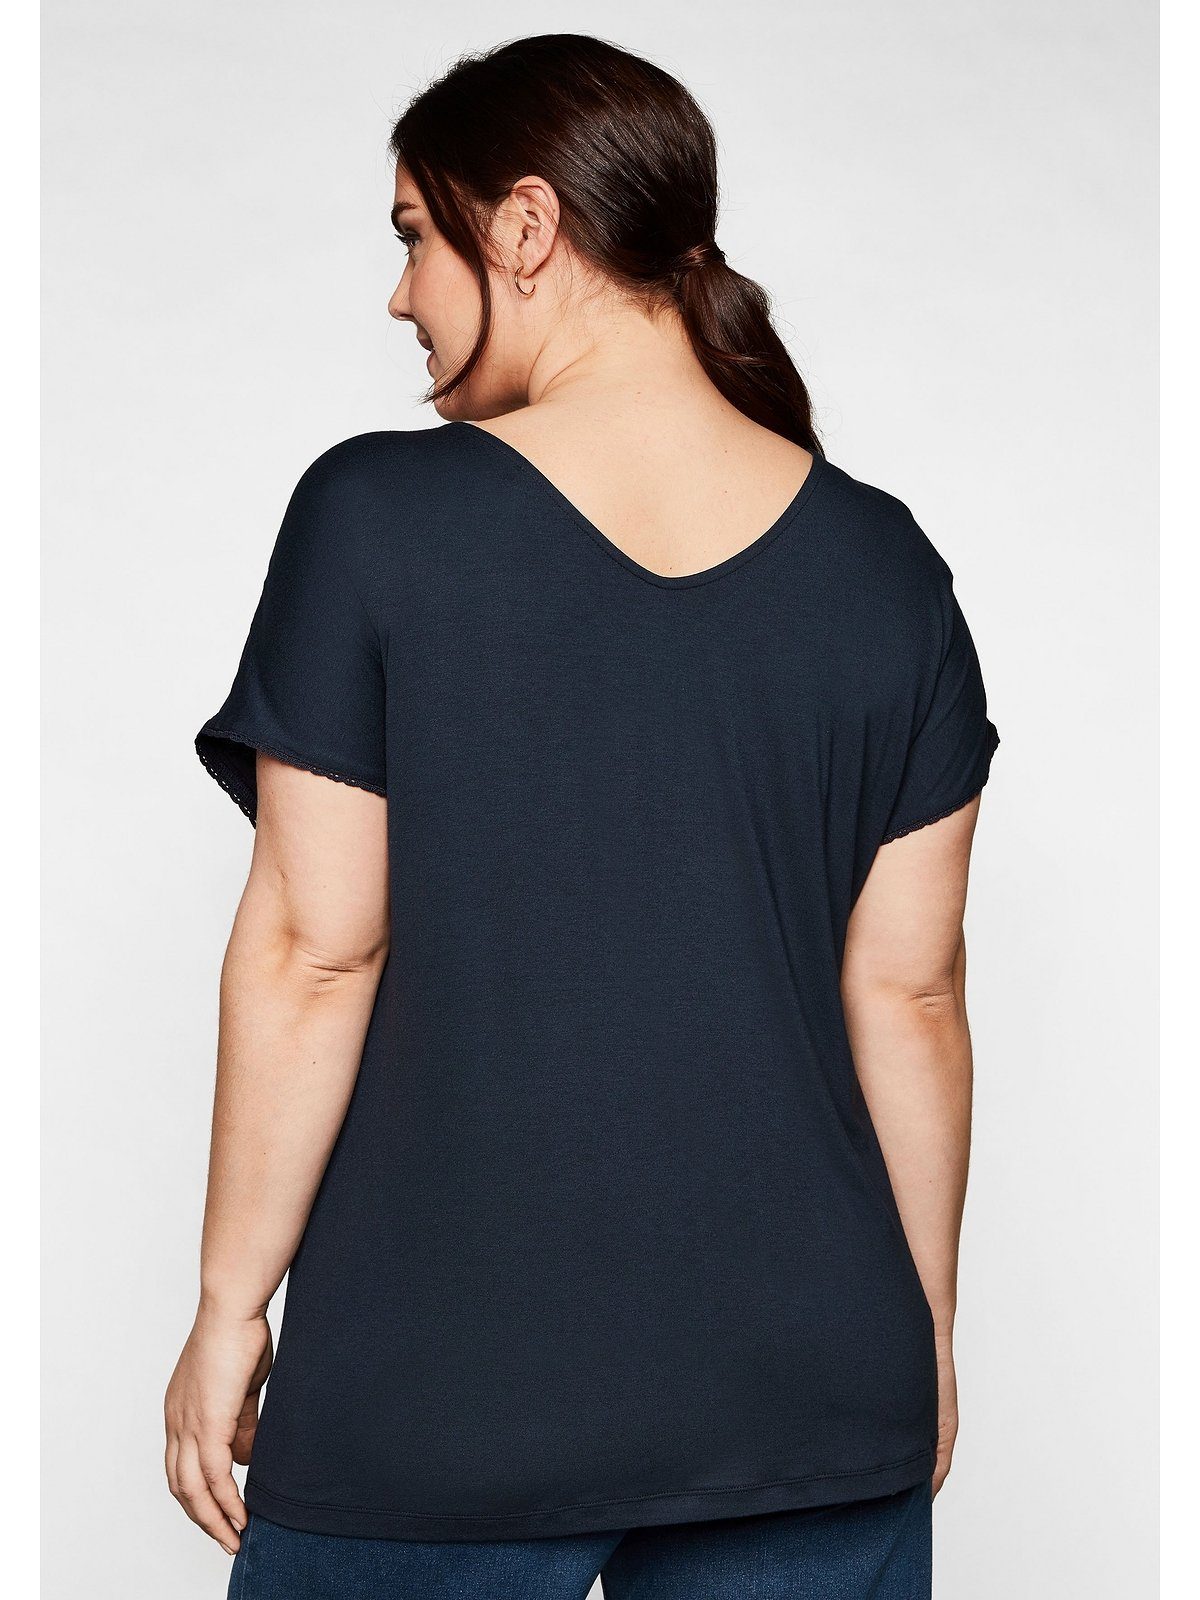 T-Shirt Große mit Ärmeln an Schulternaht Spitze Sheego und nachtblau Größen